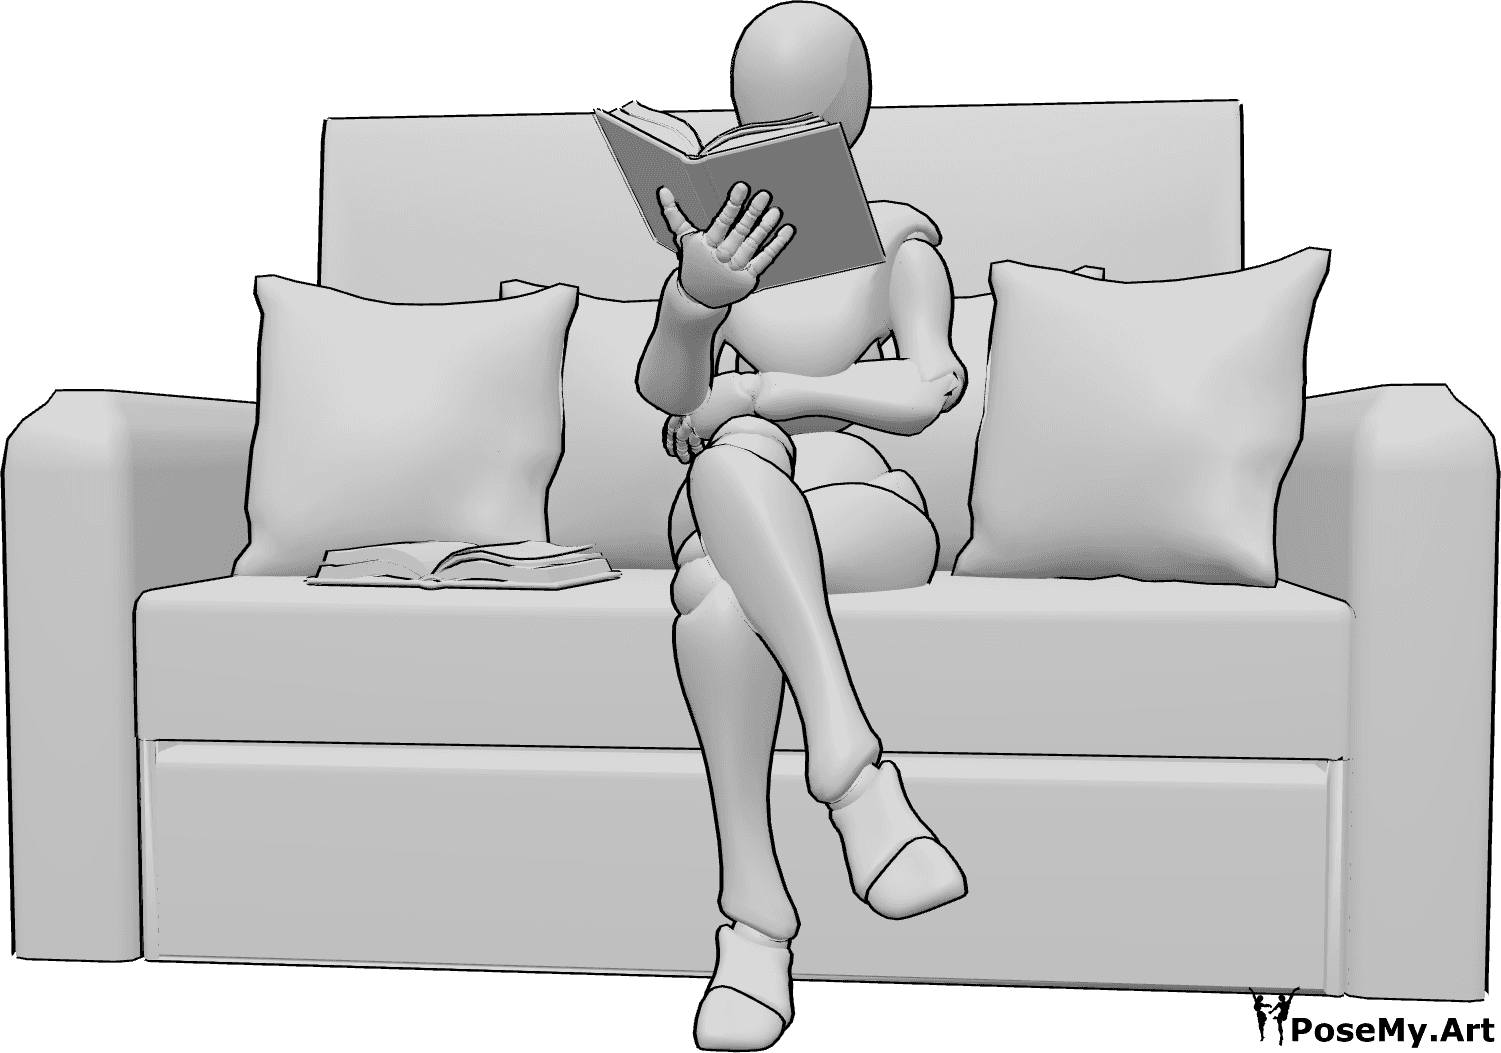 Referência de poses- Pose de leitura feminina - A mulher está sentada no sofá a ler, segurando o livro com a mão direita